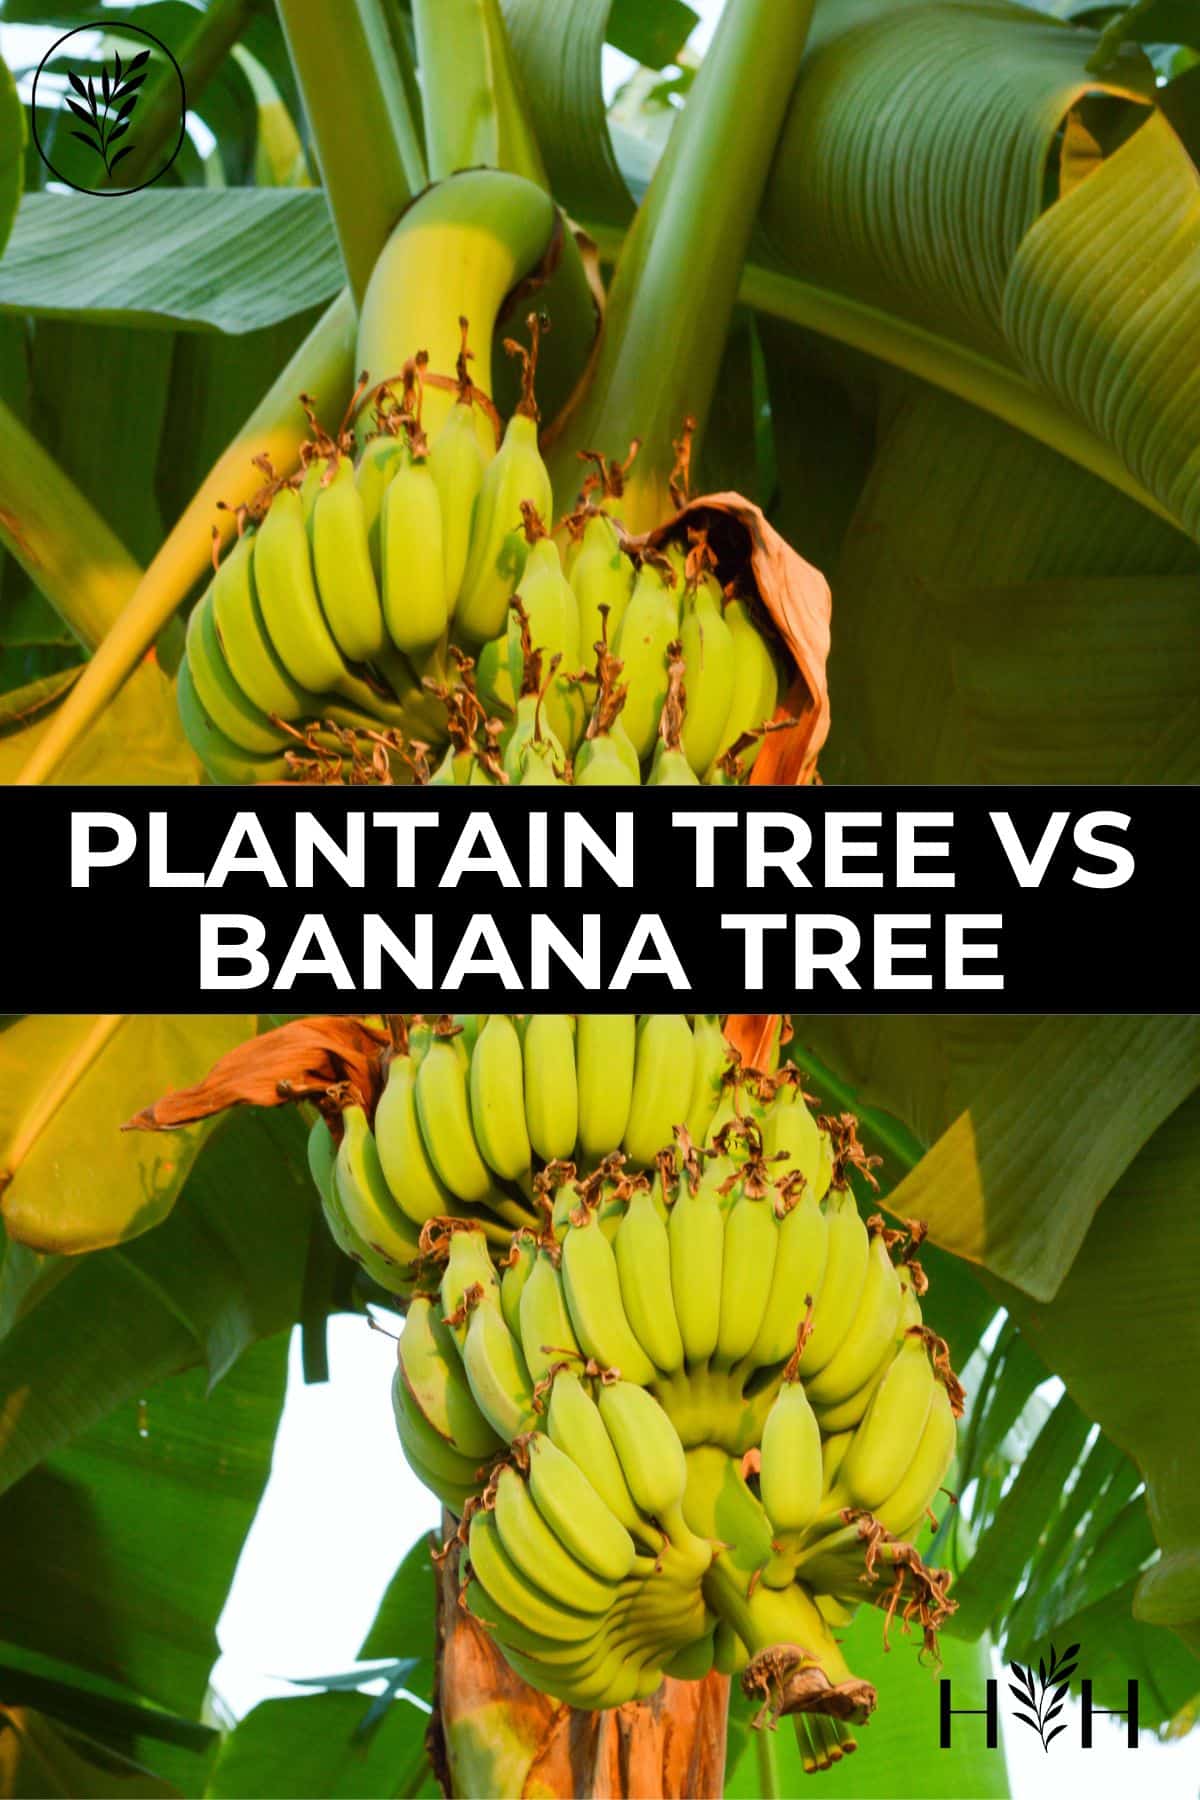 Plantain tree vs banana tree via @home4theharvest